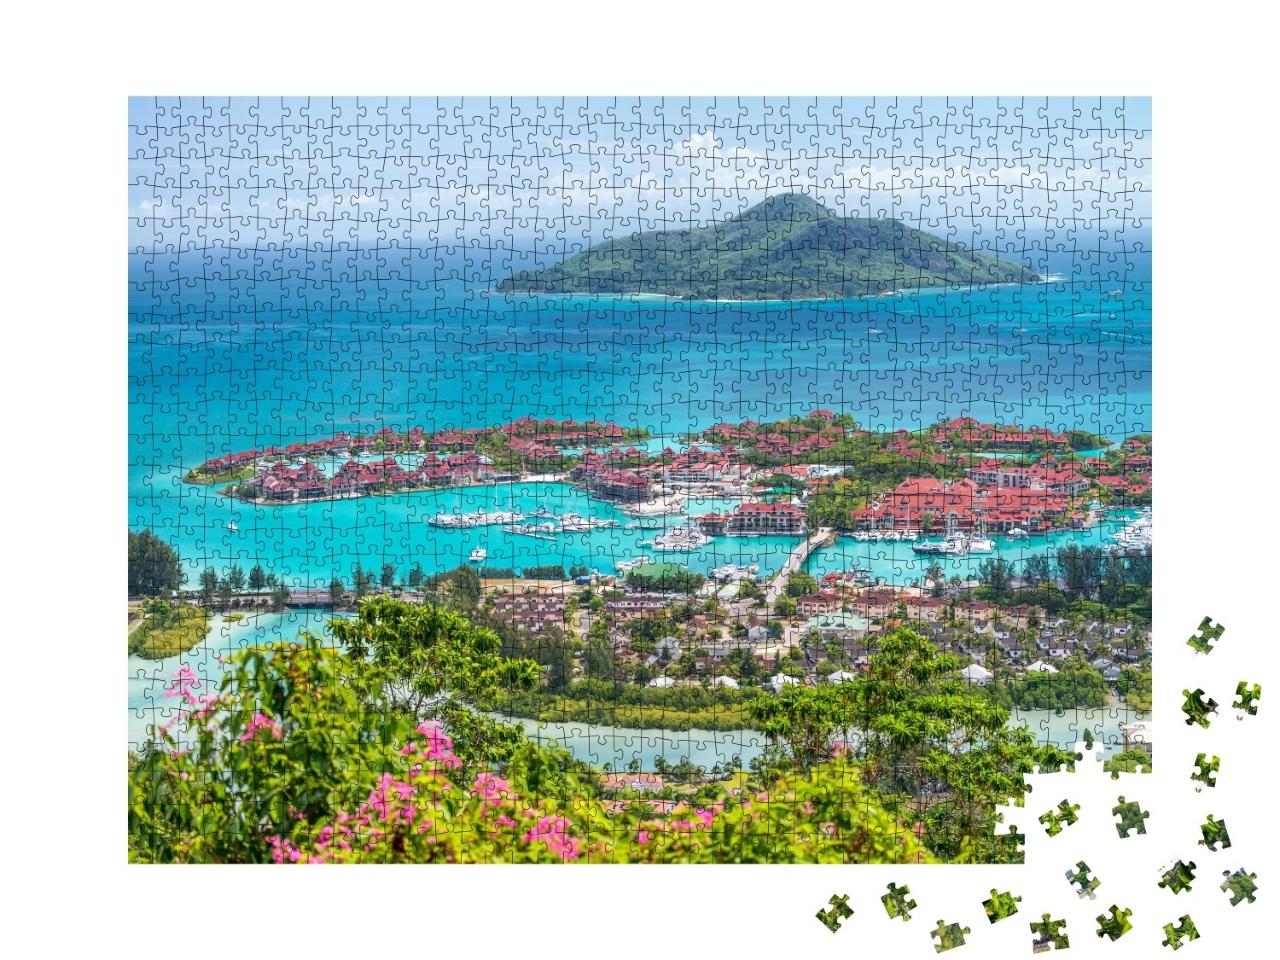 Puzzle de 1000 pièces « Toits rouges d'Eden Island, Seychelles »